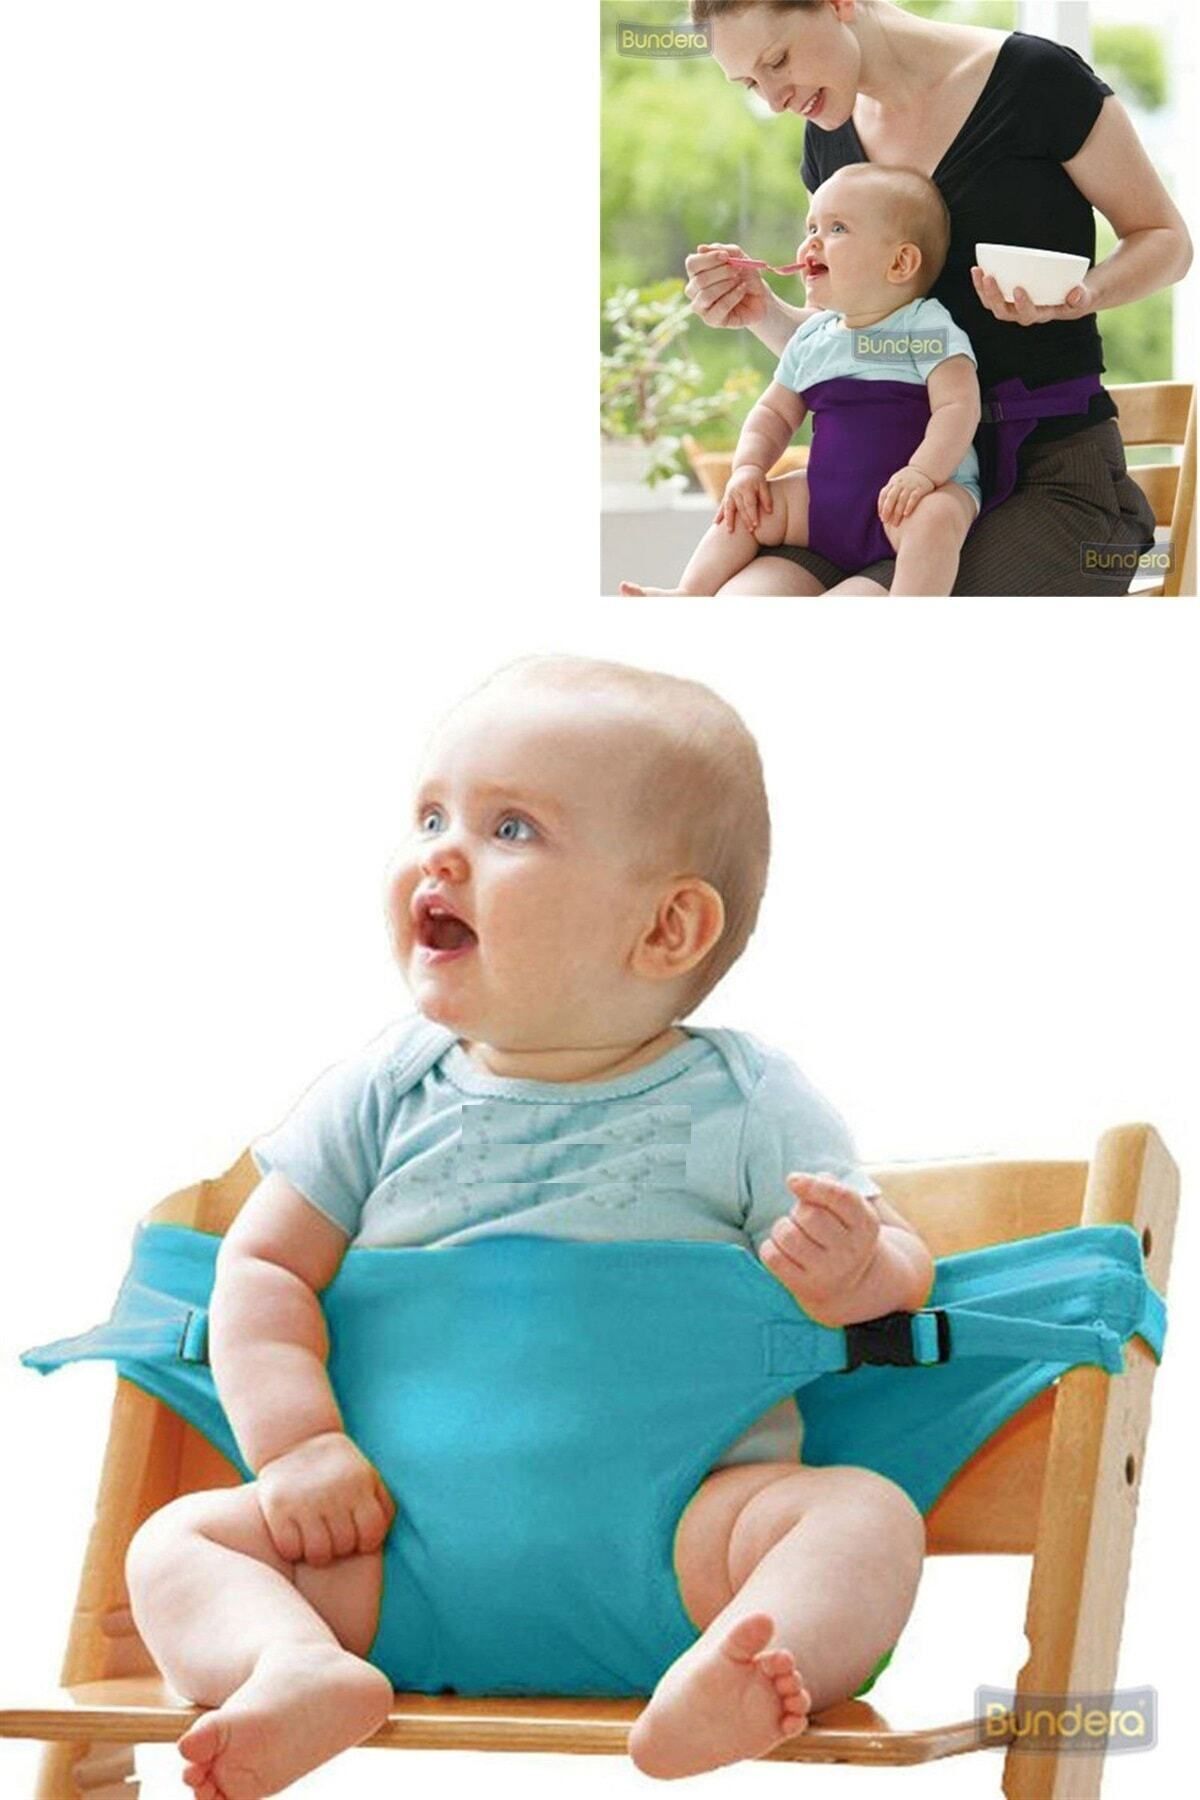 Bundera Bebek Mama Sandalyesi Mavi Emniyet Kemeri, Bebek Güvenlik Kemeri, Kilit Bebek Koruma Koruyucu Kılıf